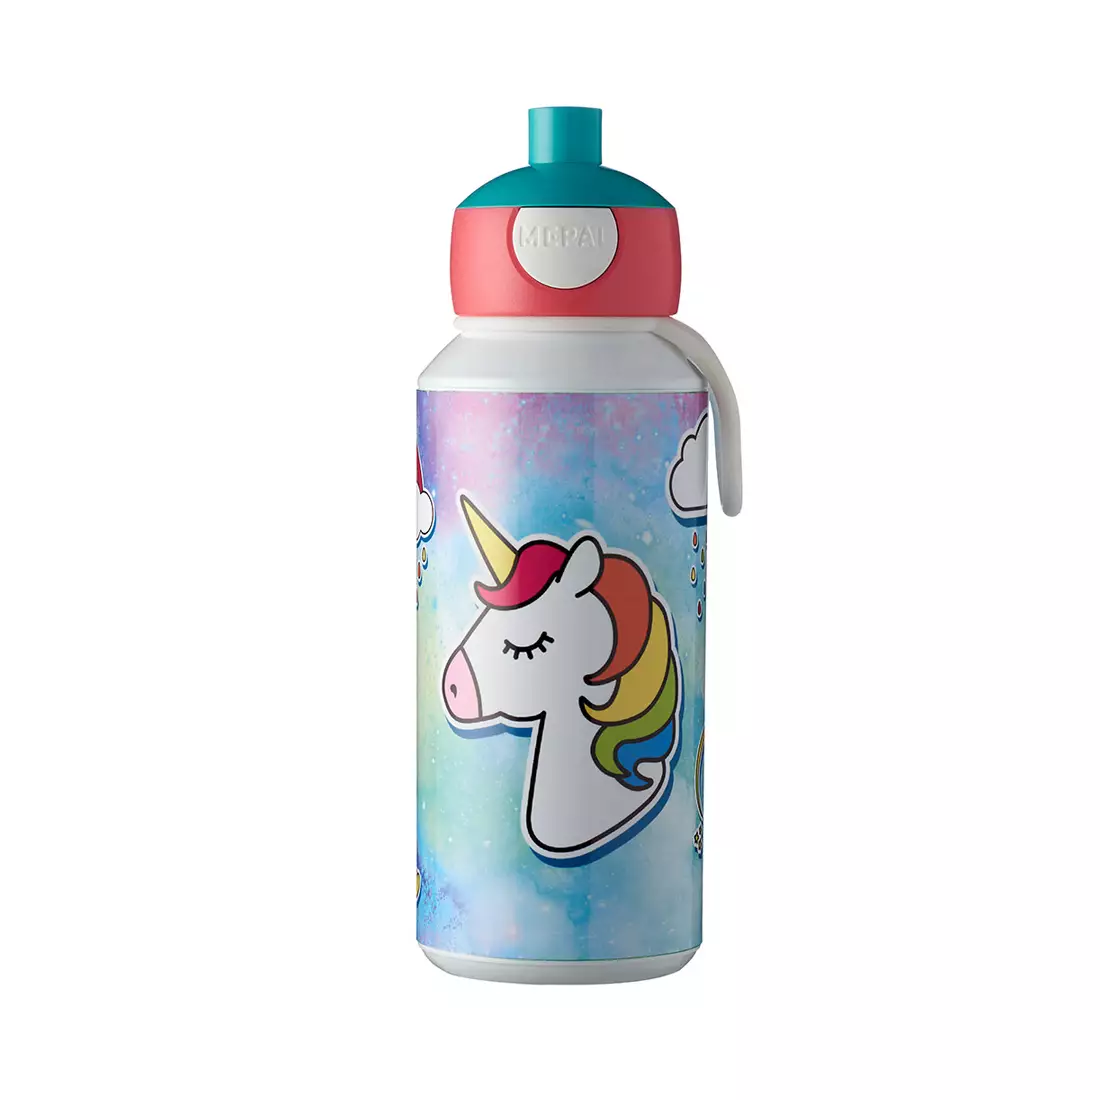 MEPAL CAMPUS POP UP láhev na vodu pro děti 400ml Unicorn